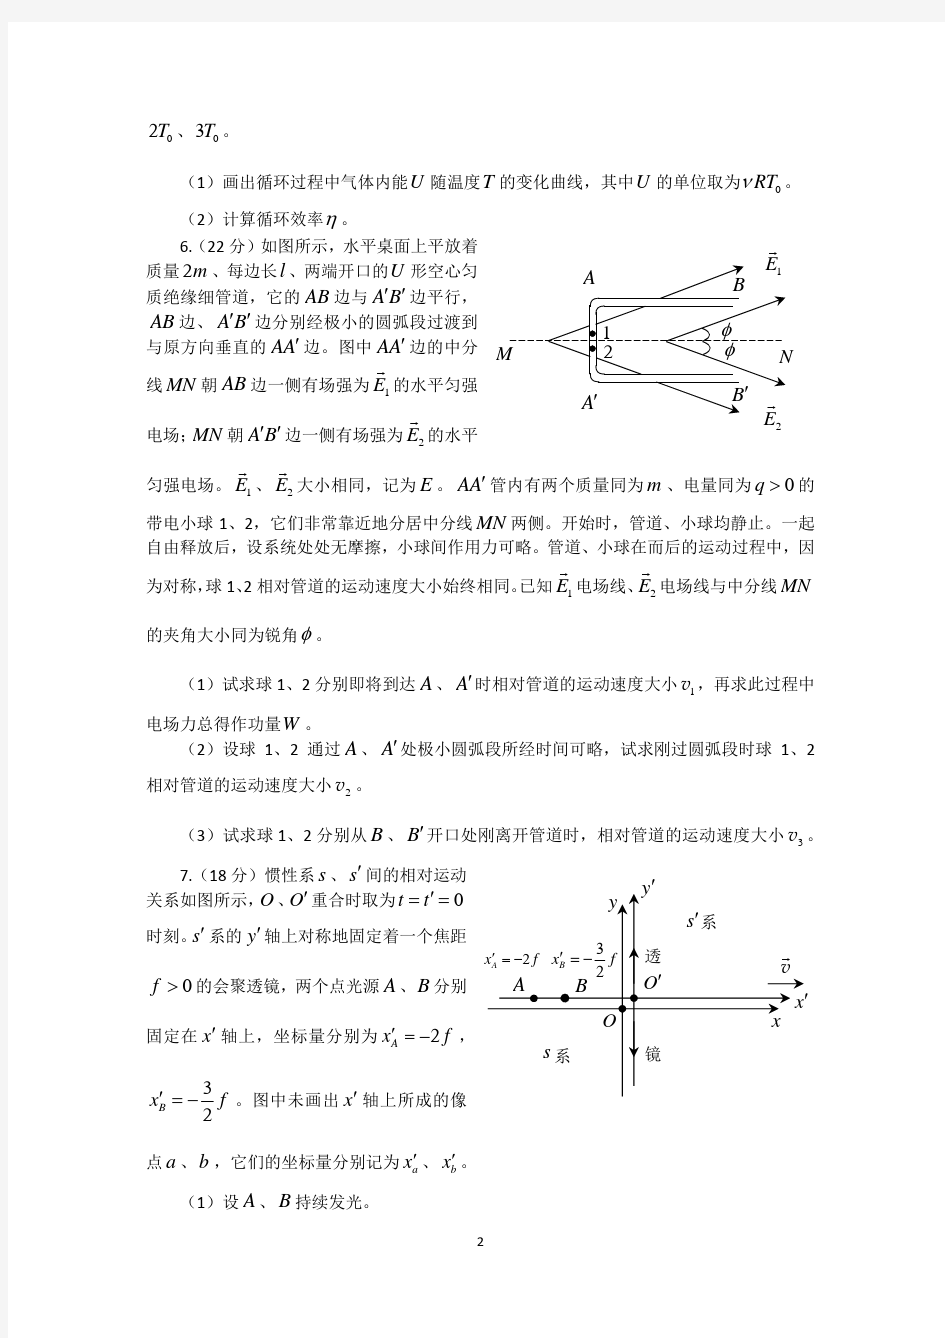 2015年北京大学物理科学营试题解析